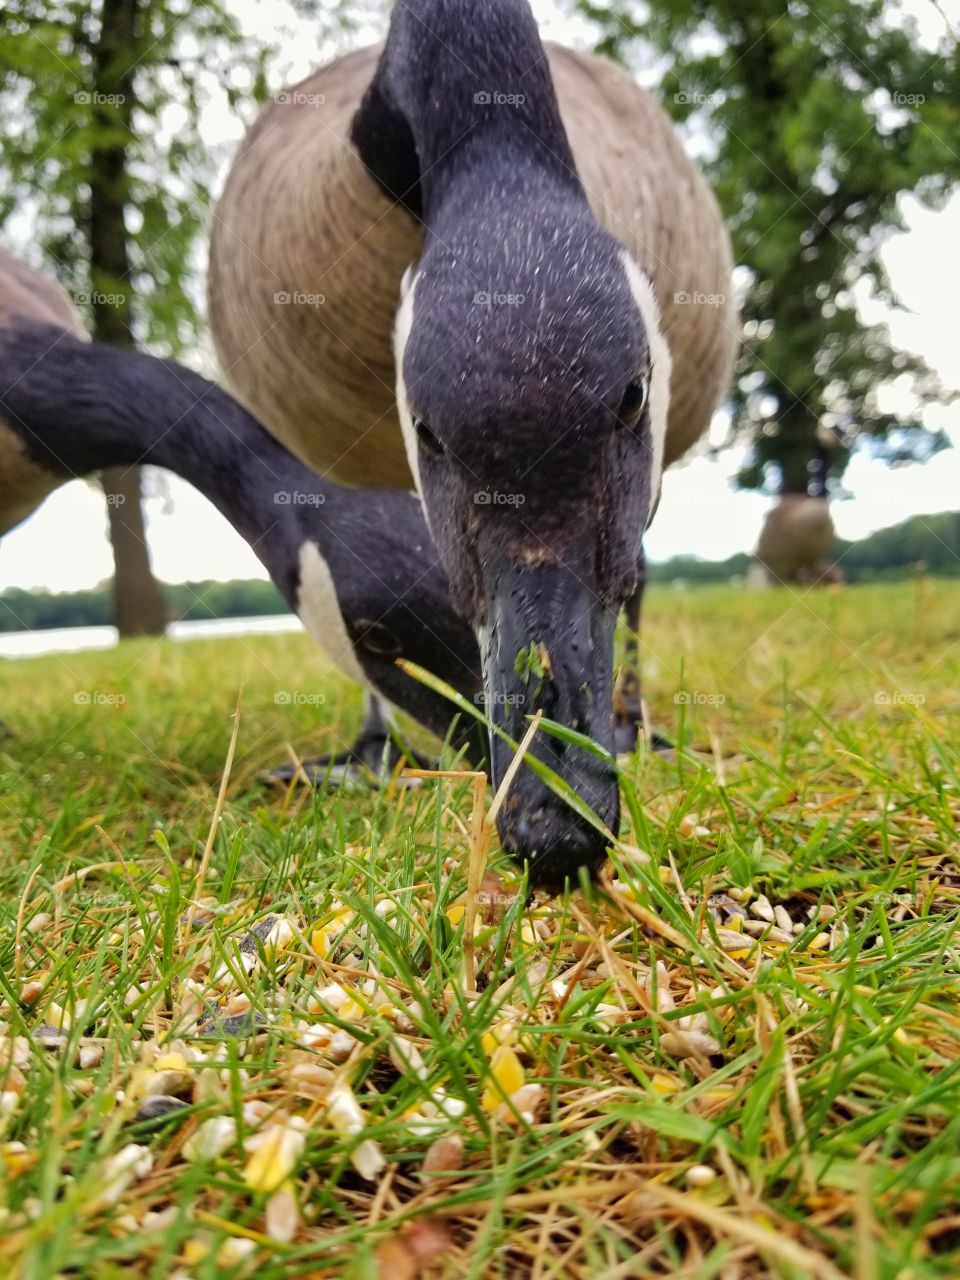 Up close goose